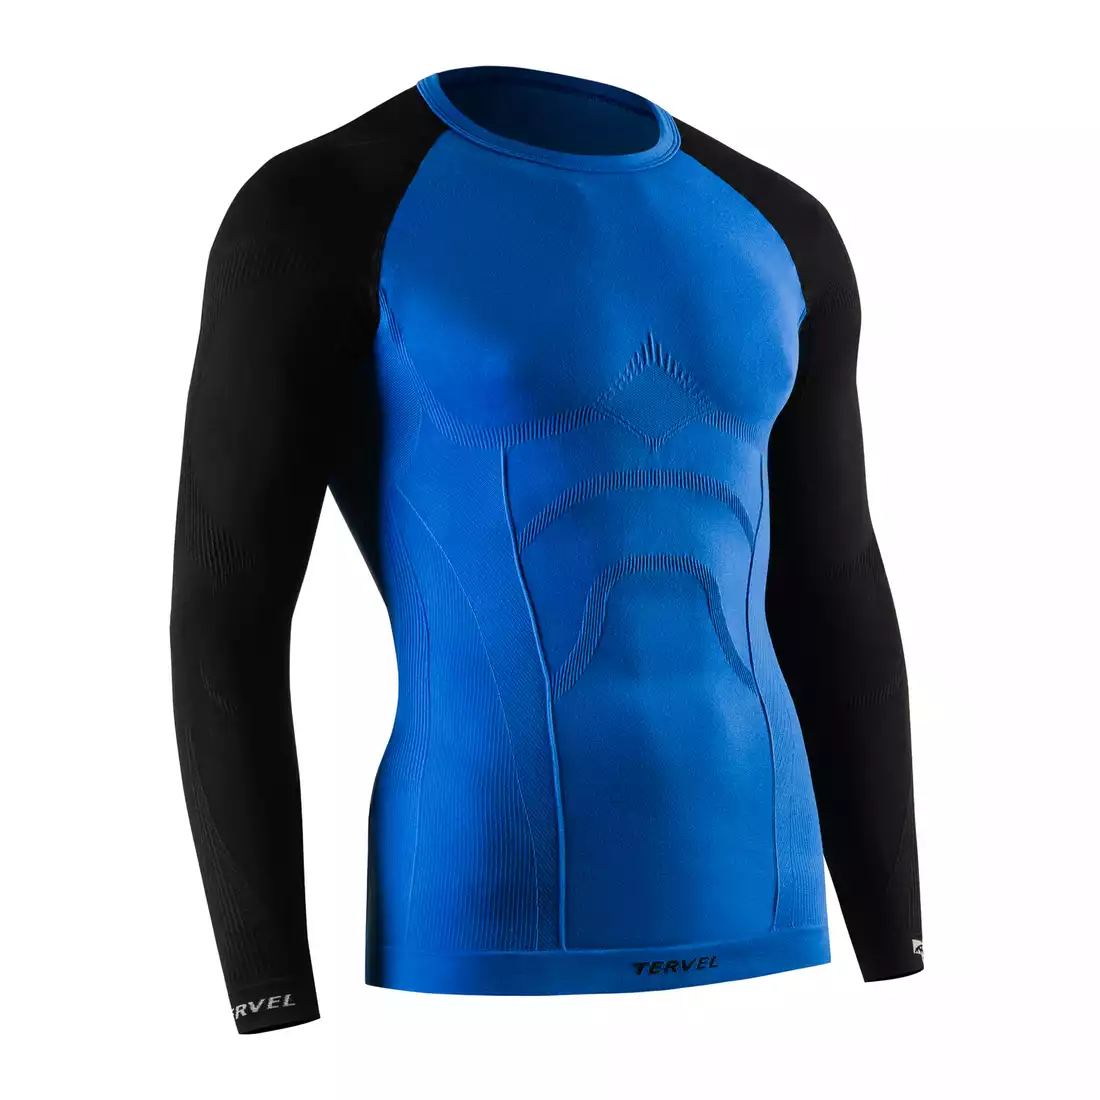 TERVEL COMFORTLINE 1002 - męska koszulka termoaktywna, długi rękaw, kolor: Niebieski-czarny